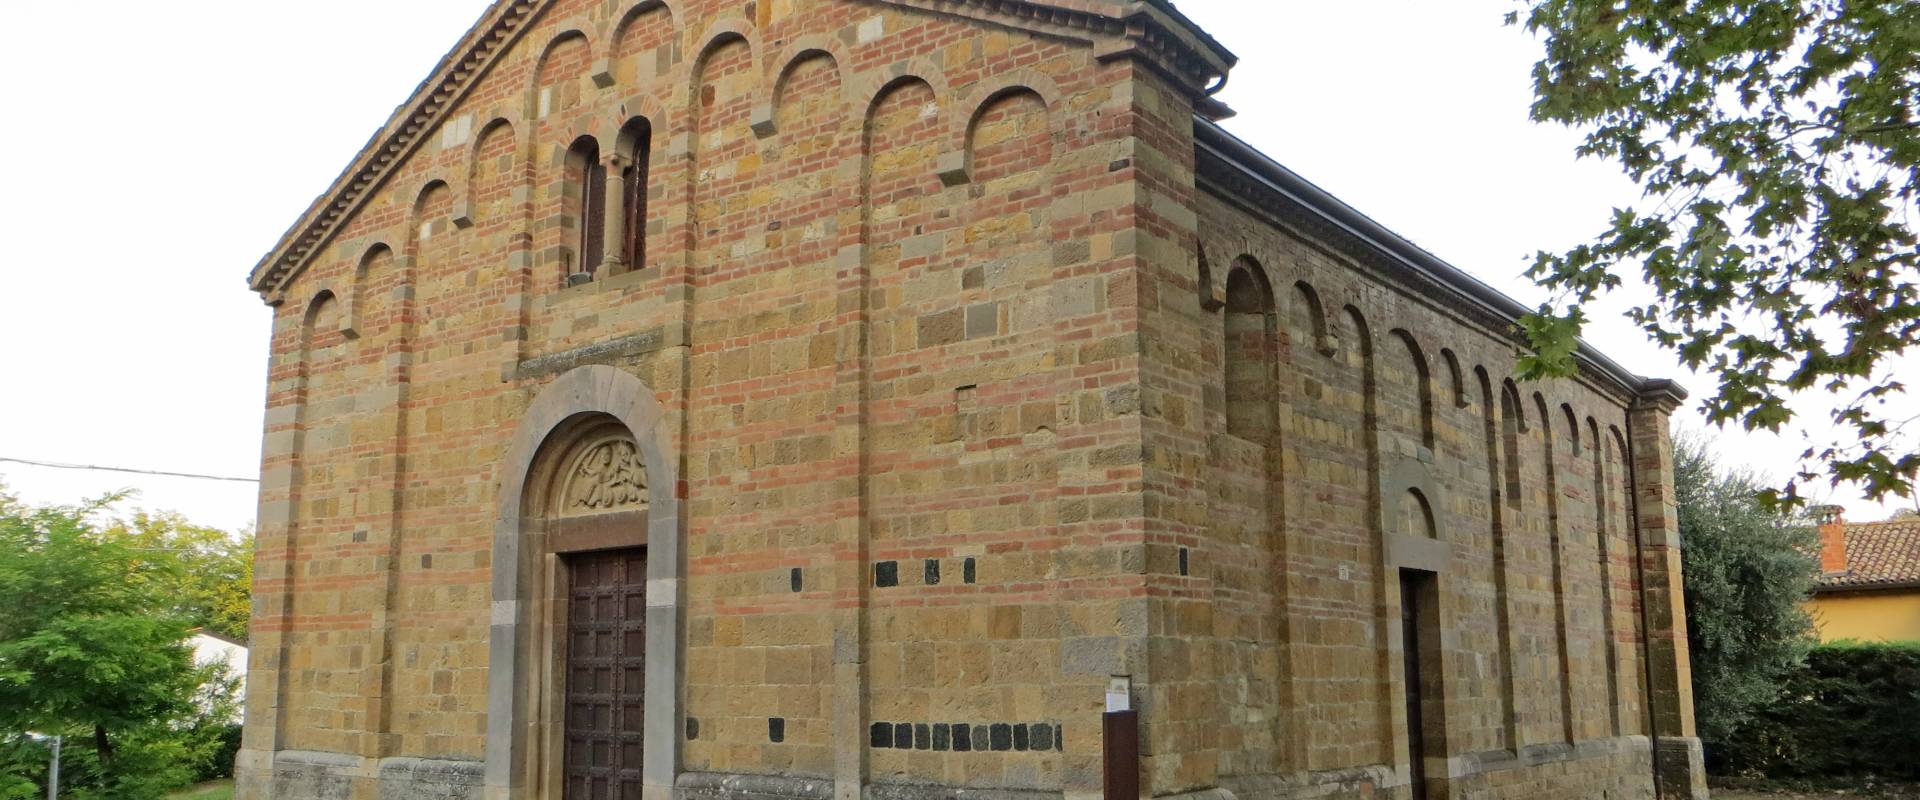 Pieve di San Biagio (Talignano, Sala Baganza) - facciata e lato sud 2019-09-16 foto di Parma198